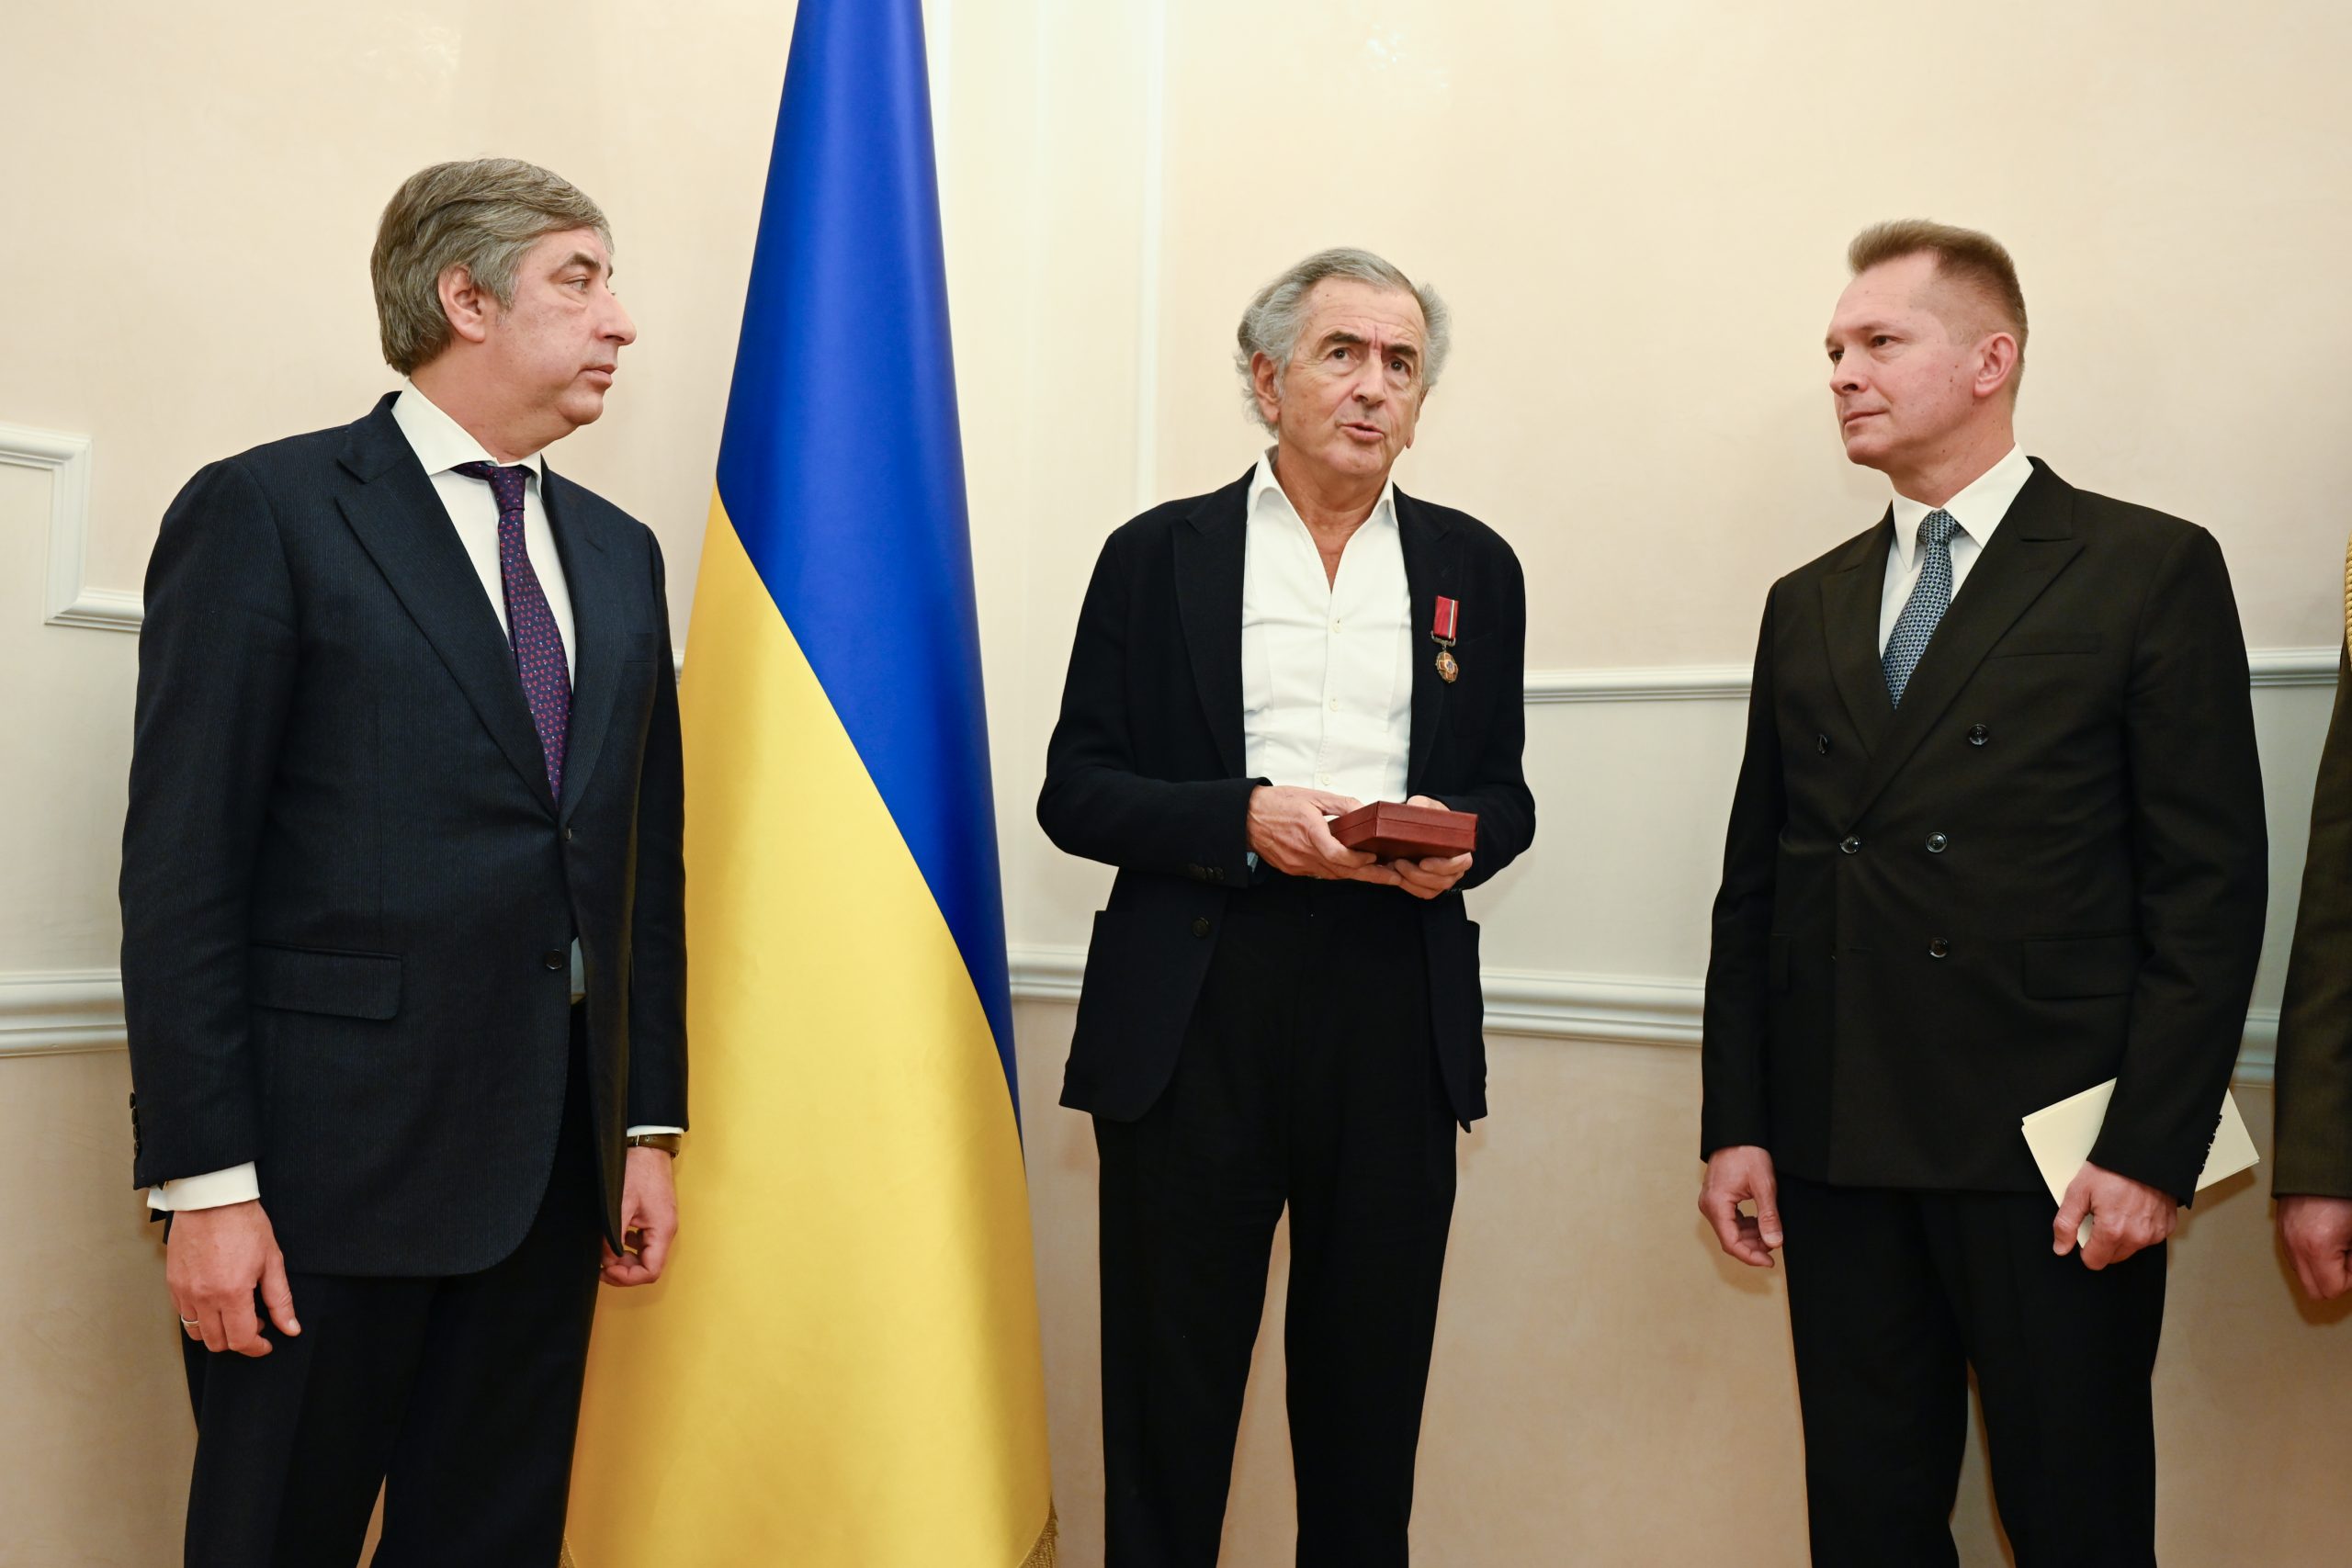 BHL reçoit l'insigne de Chevalier de l'Ordre du Mérite d'Ukraine. Il y a Vadym Omelchenko a côté de lui. Ils sont devant un drapeau ukranien.